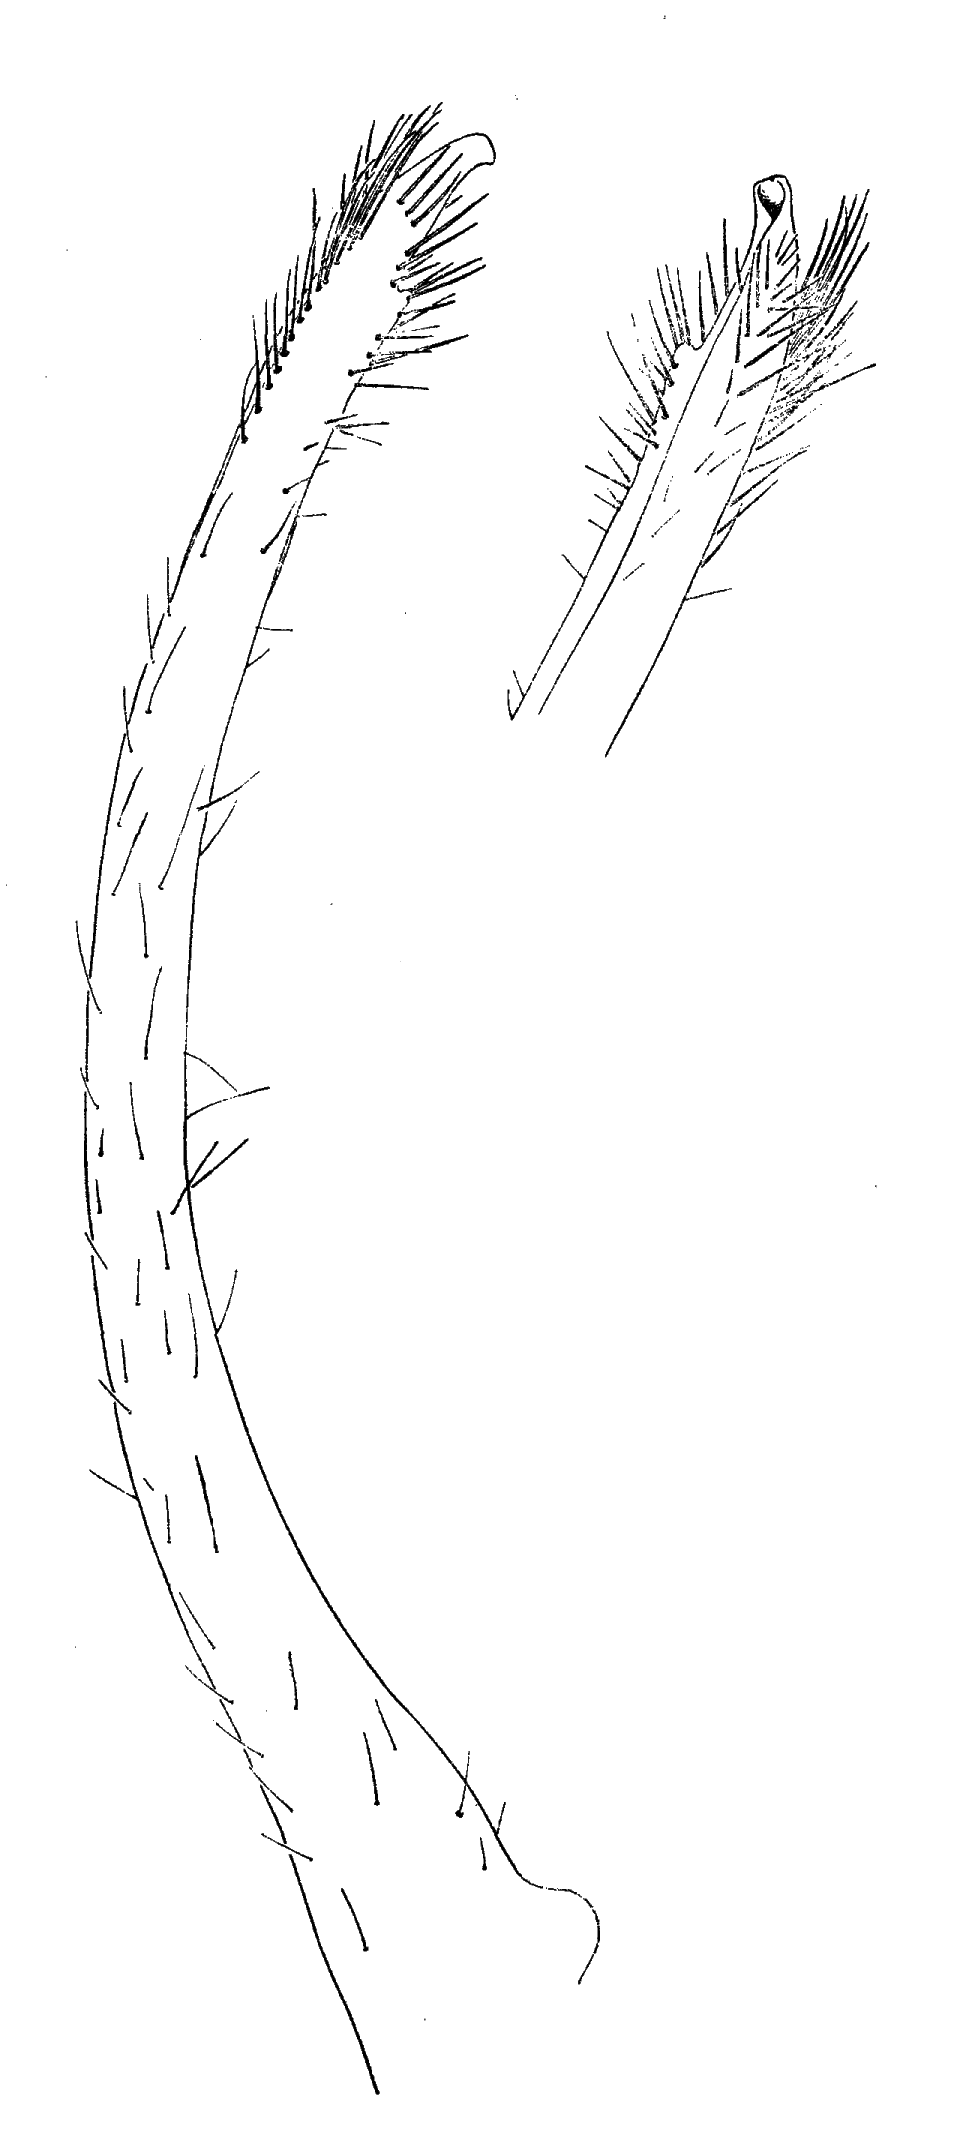 Uca gaimardi: Forest & Guinot (1961) image